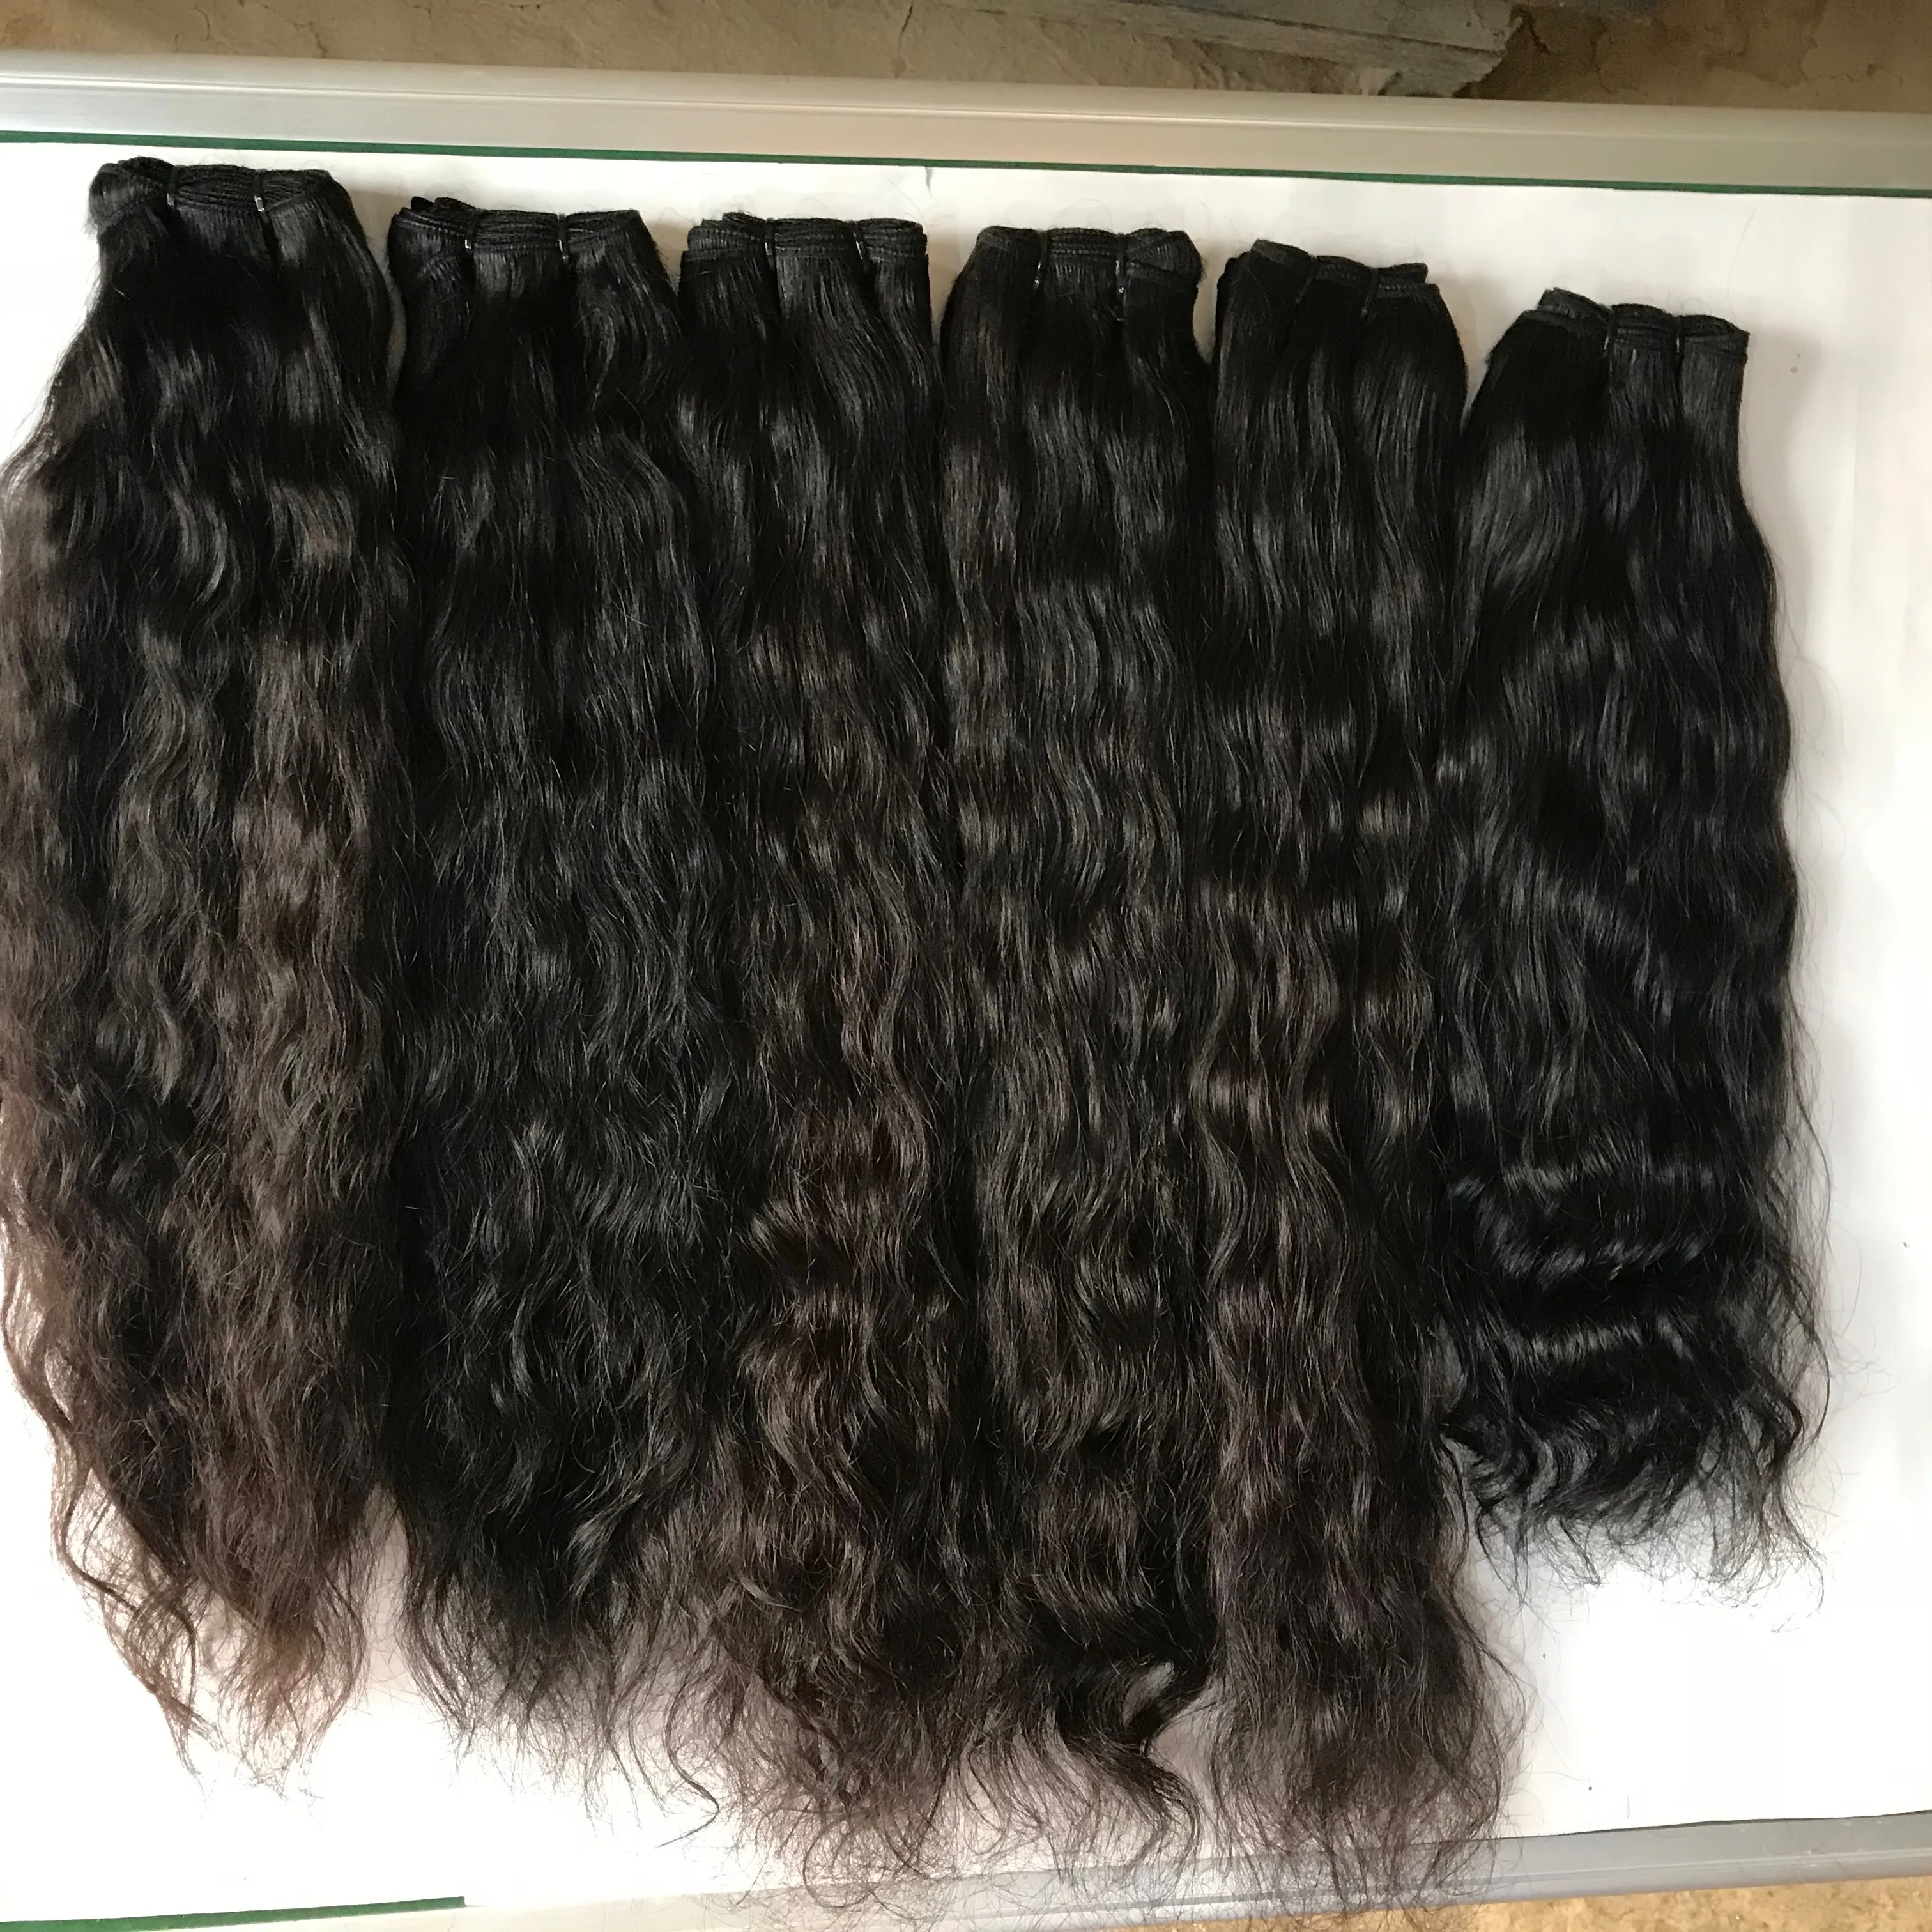 Лучшая НЕОБРАБОТАННАЯ 100% выровненная кутикула плетеные волосы от поставщика, натуральные накладные волосы в Индии, оптовая продажа натуральных необработанных индийских волос